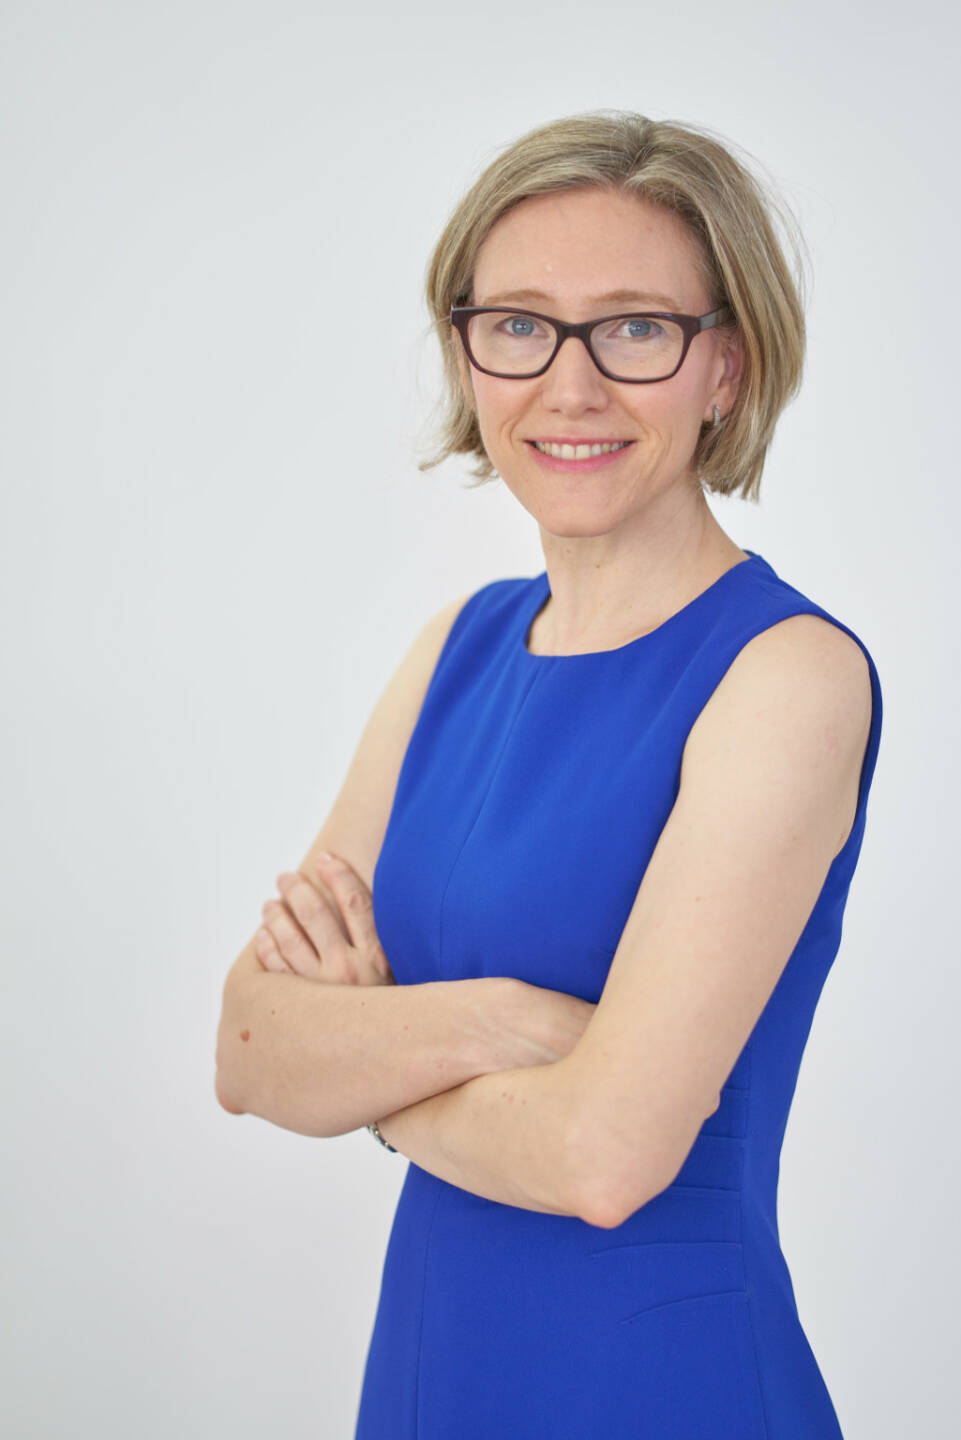 Austria Wirtschaftsservice: Elvira Welzig ist neue Abteilungsleiterin für Schutzrechtsmanagement in der aws, Credit: aws